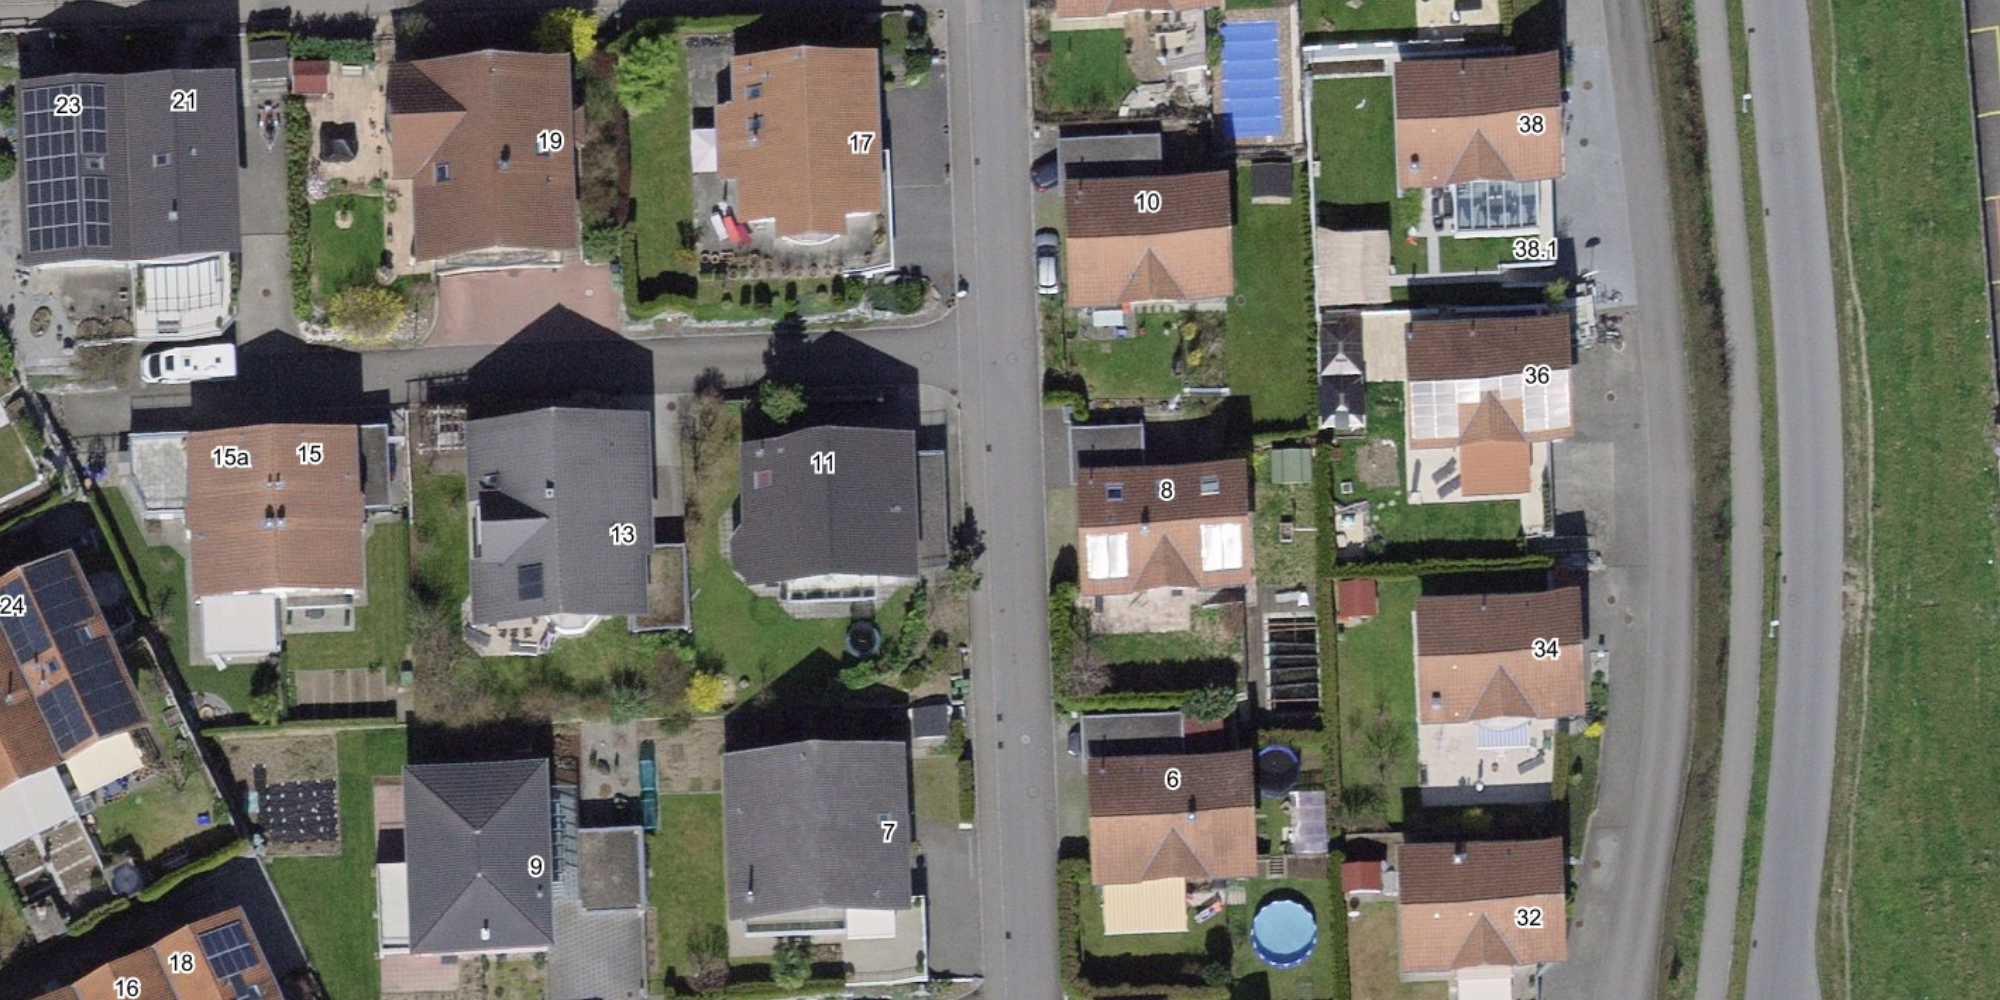 L'immagine mostra una veduta aerea di un quartiere di case unifamiliari, con gli indirizzi degli edifici corrispondenti.